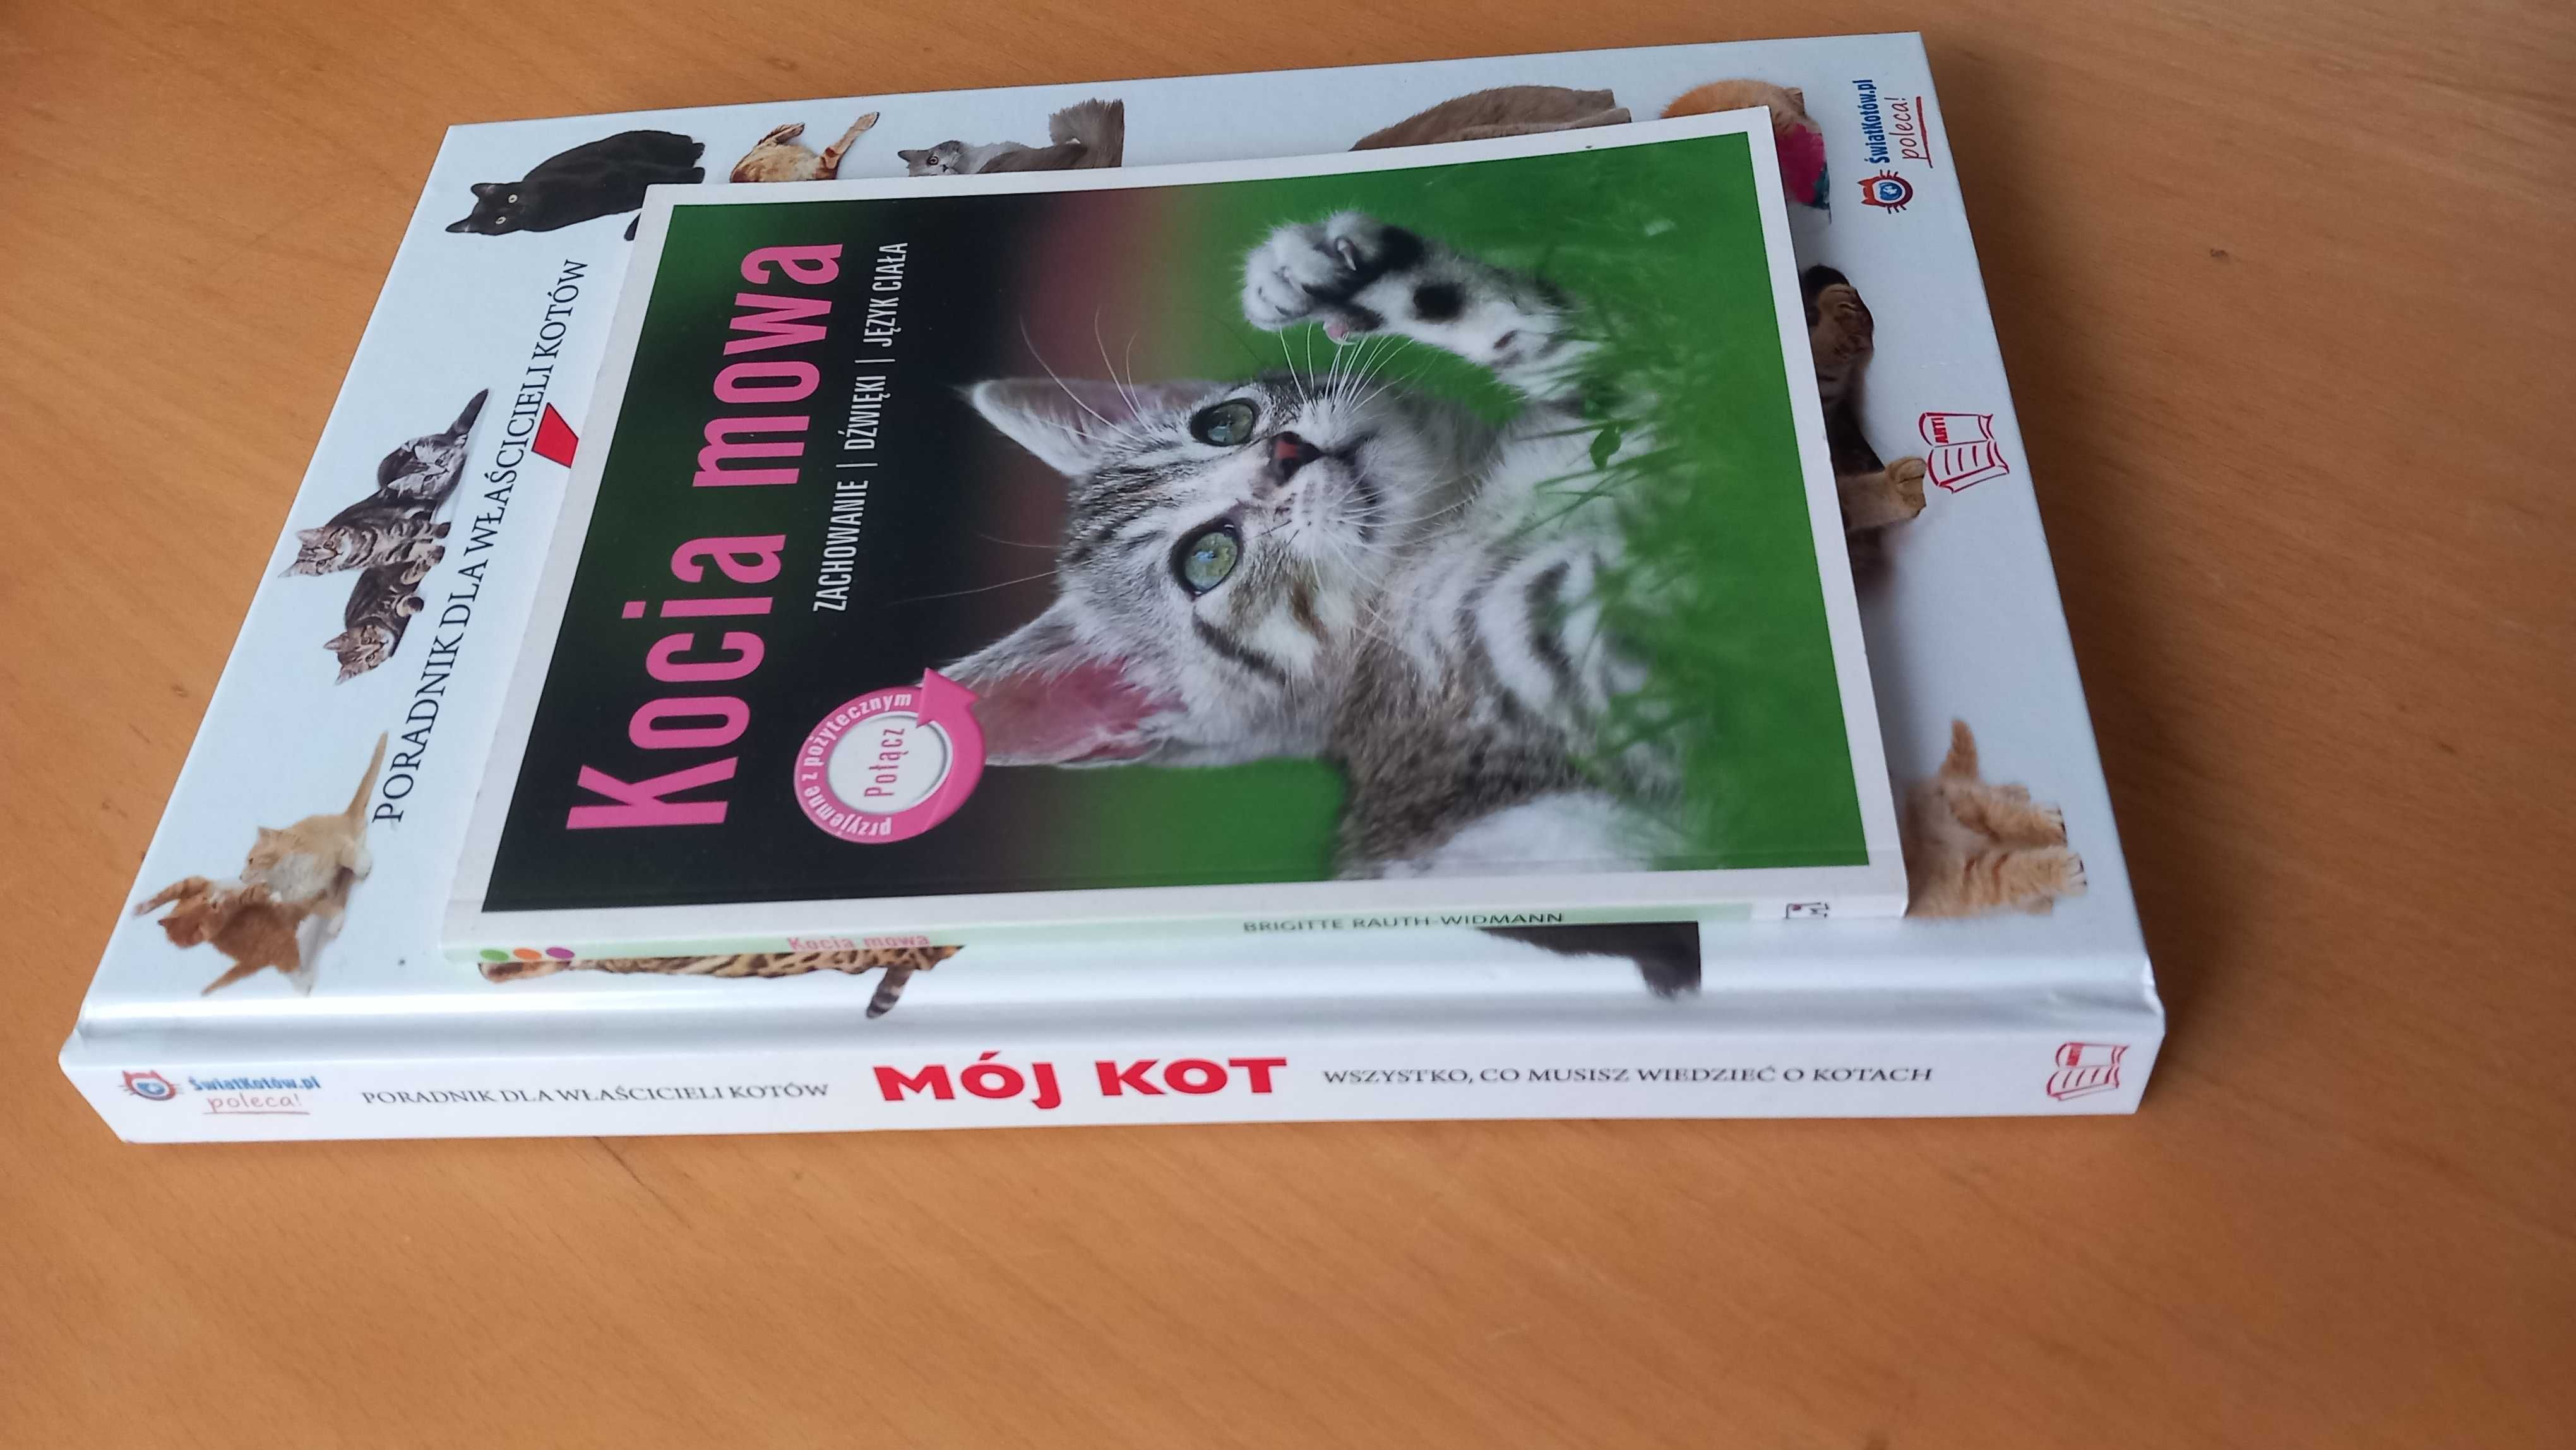 Zestaw 2 książek o kotach poradniki Mój kot Kocia mowa behawior